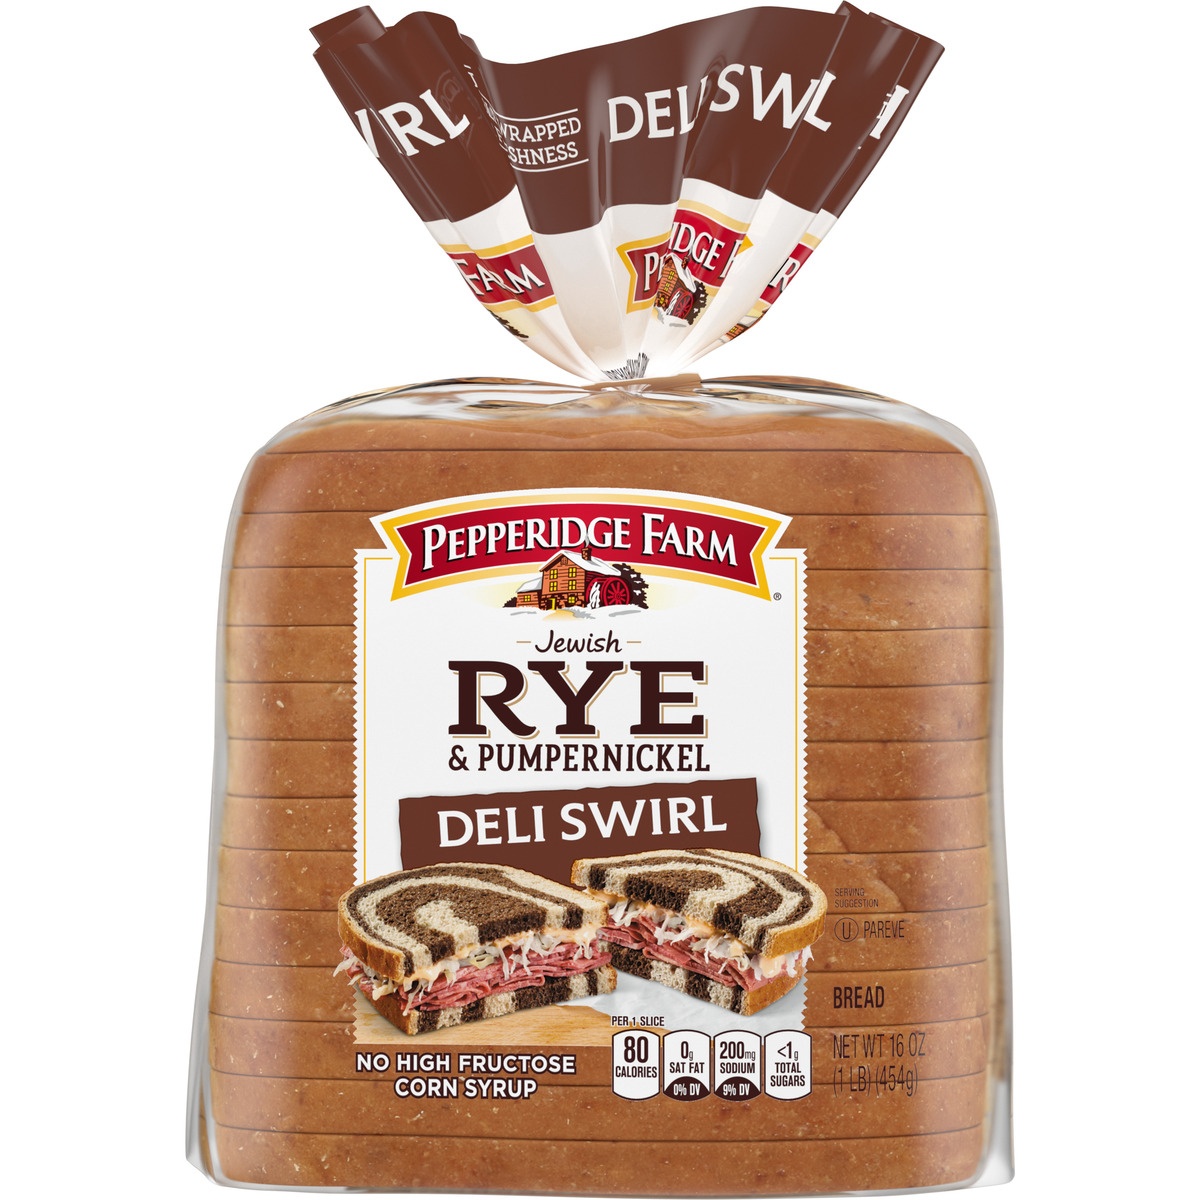 slide 11 of 11, Pepperidge Farm Rye & Pumpernickel Deli Swirl Bread, 16 oz